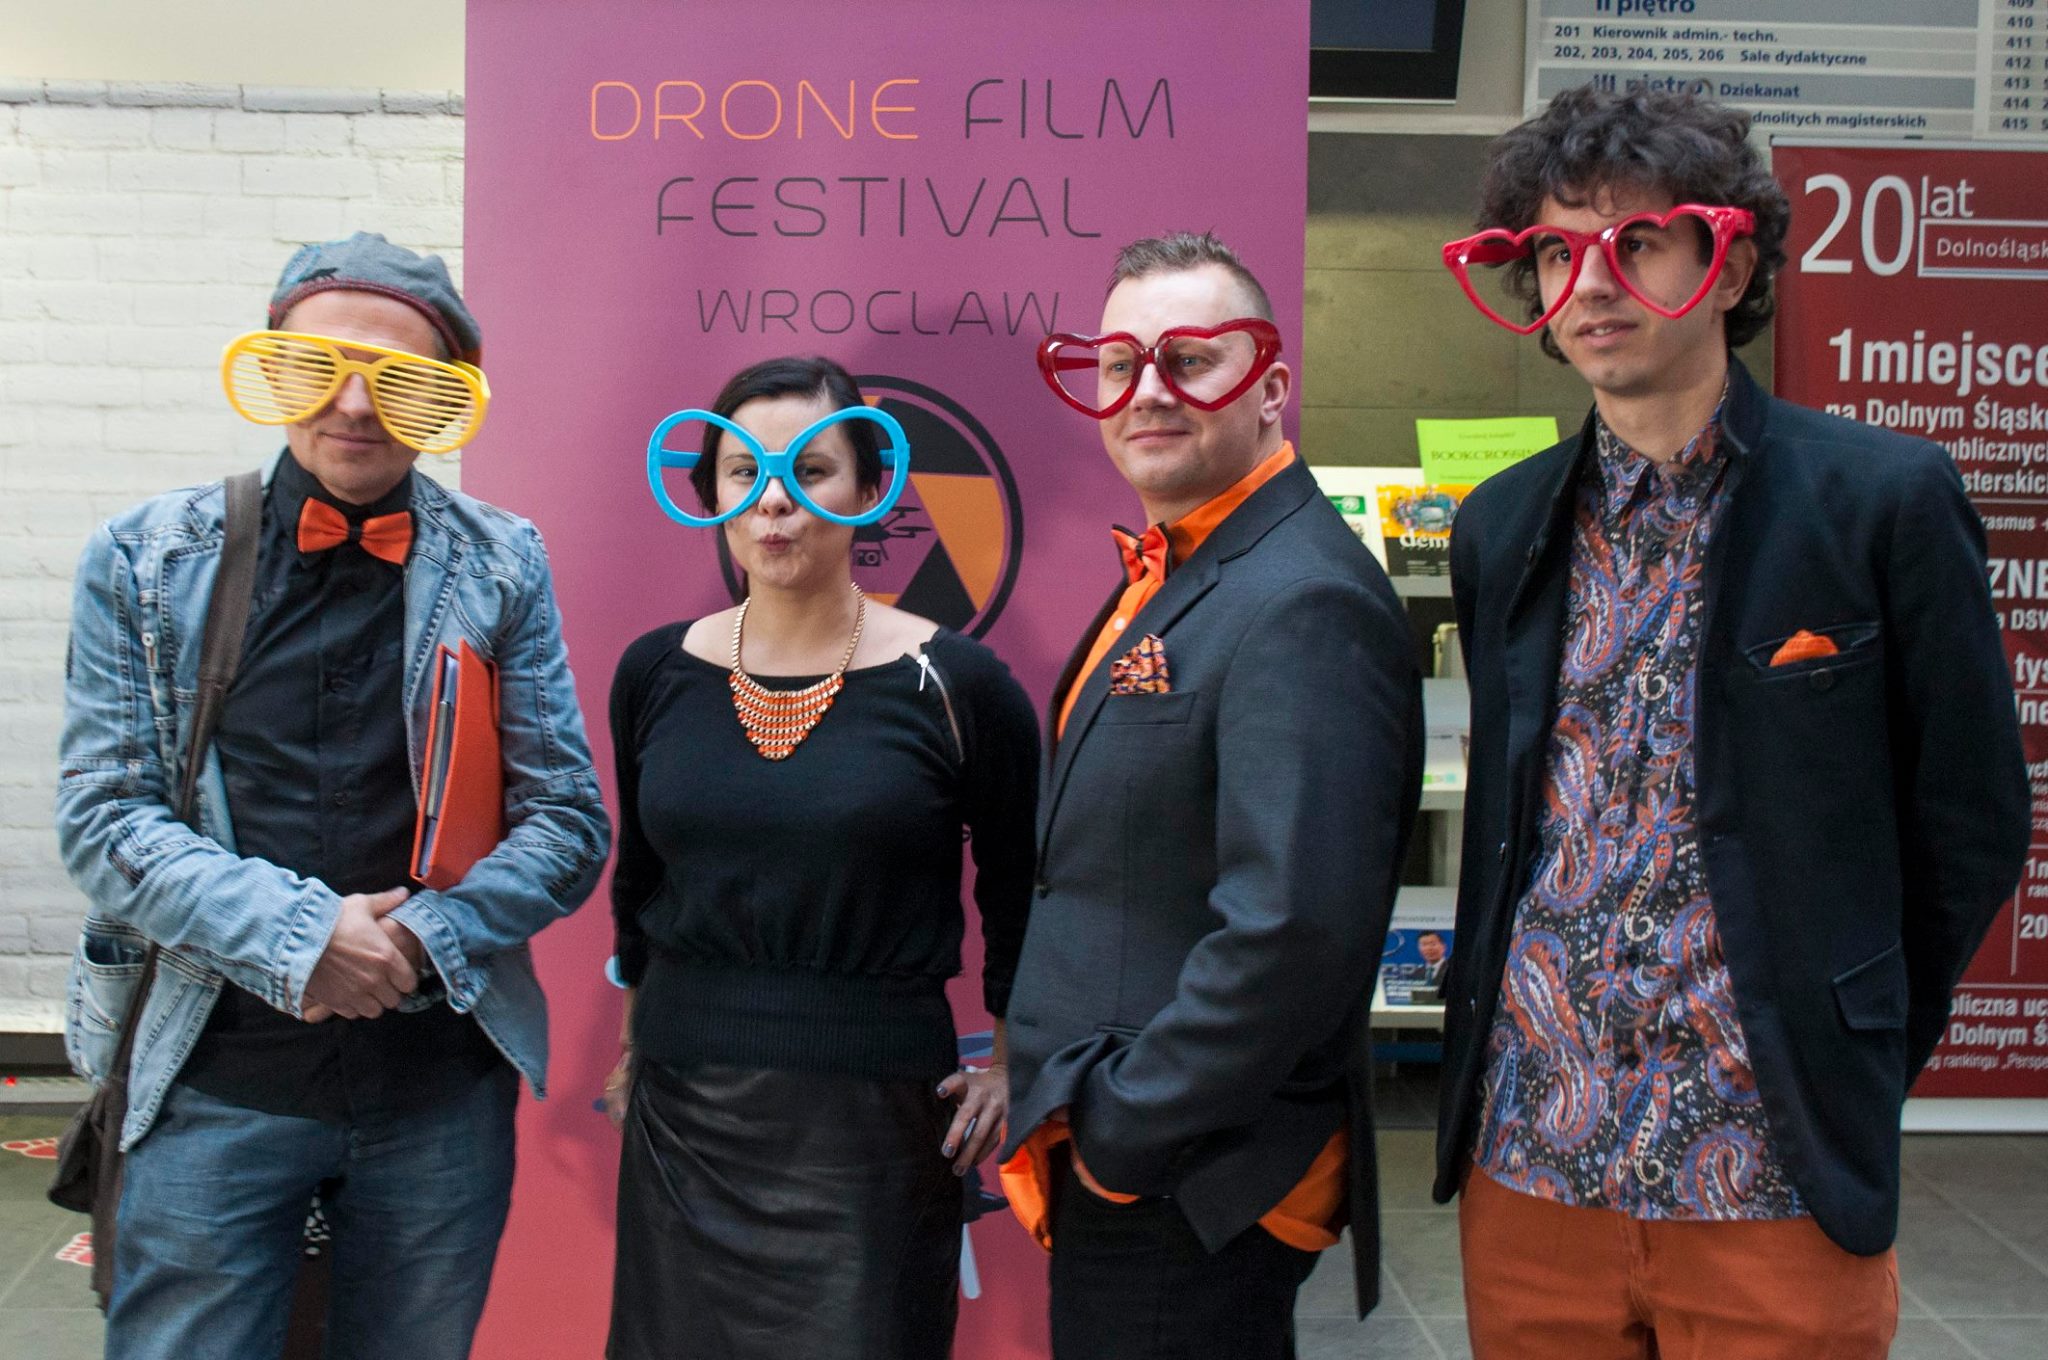 Podsumowanie Drone Film Festival Wrocław 2016